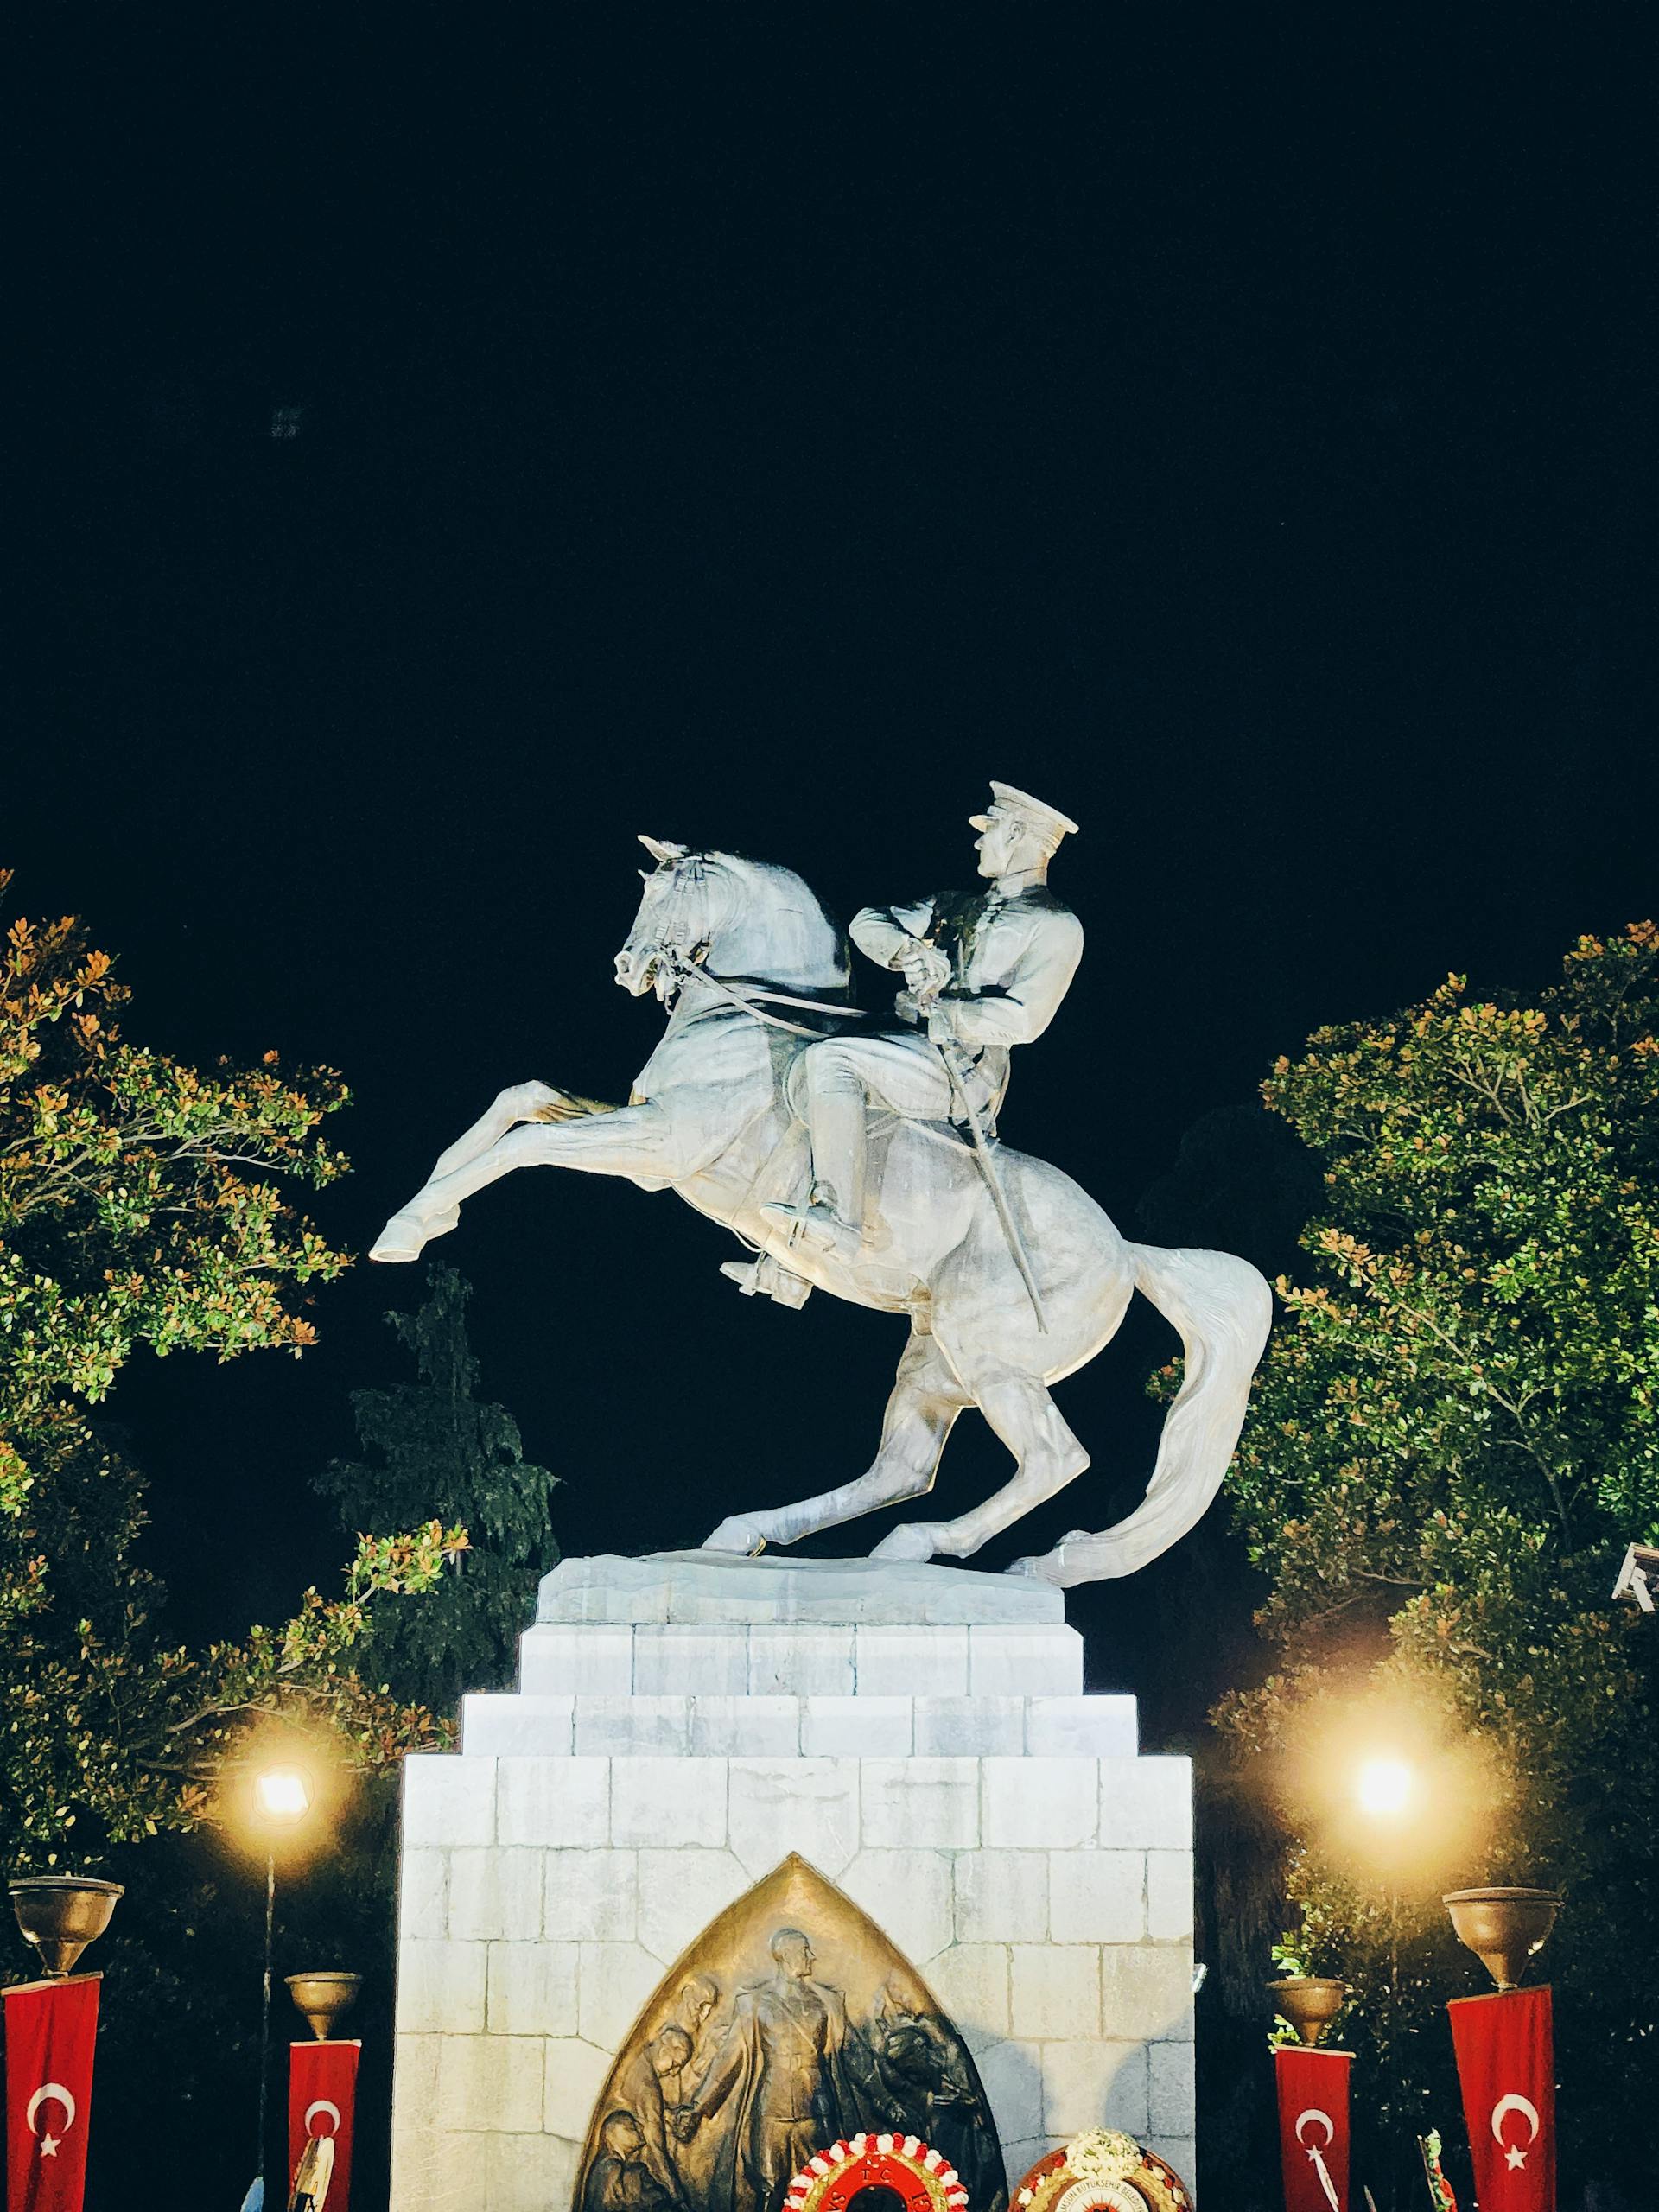 Ataturk Monument Illuminated at Night in Samsun, Turkey